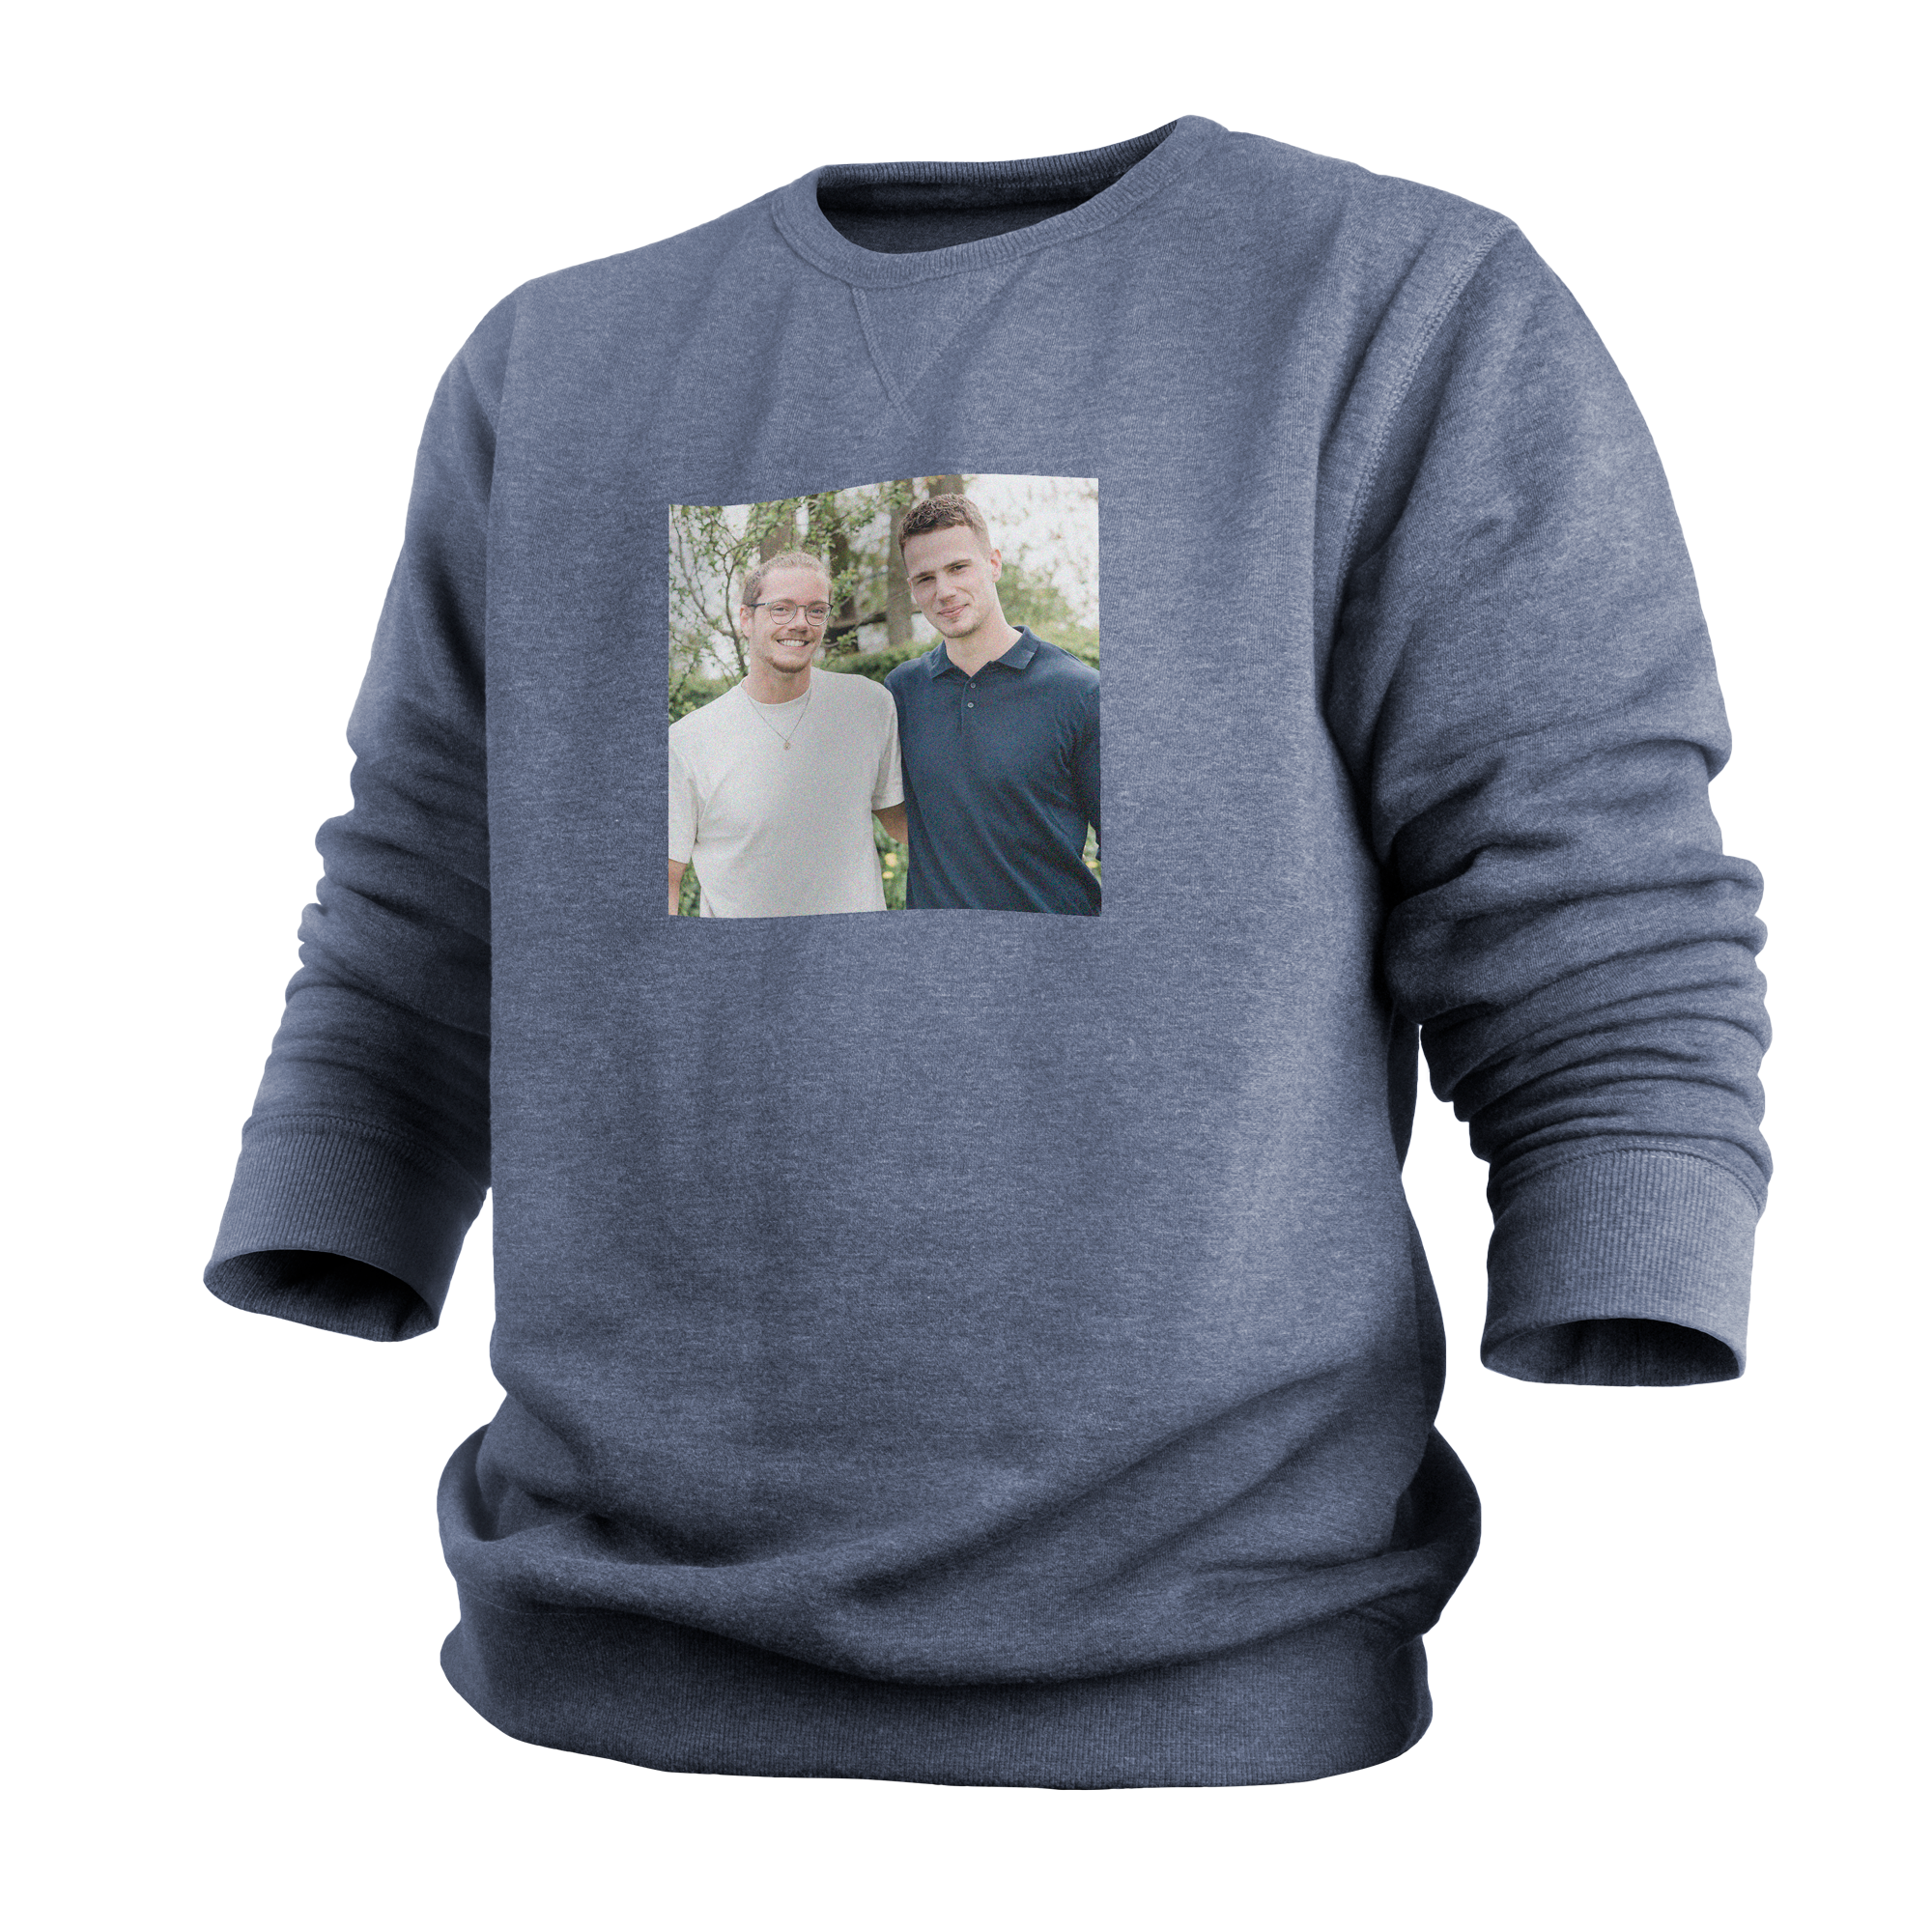 Personalised sweater - Men - Indigo - L